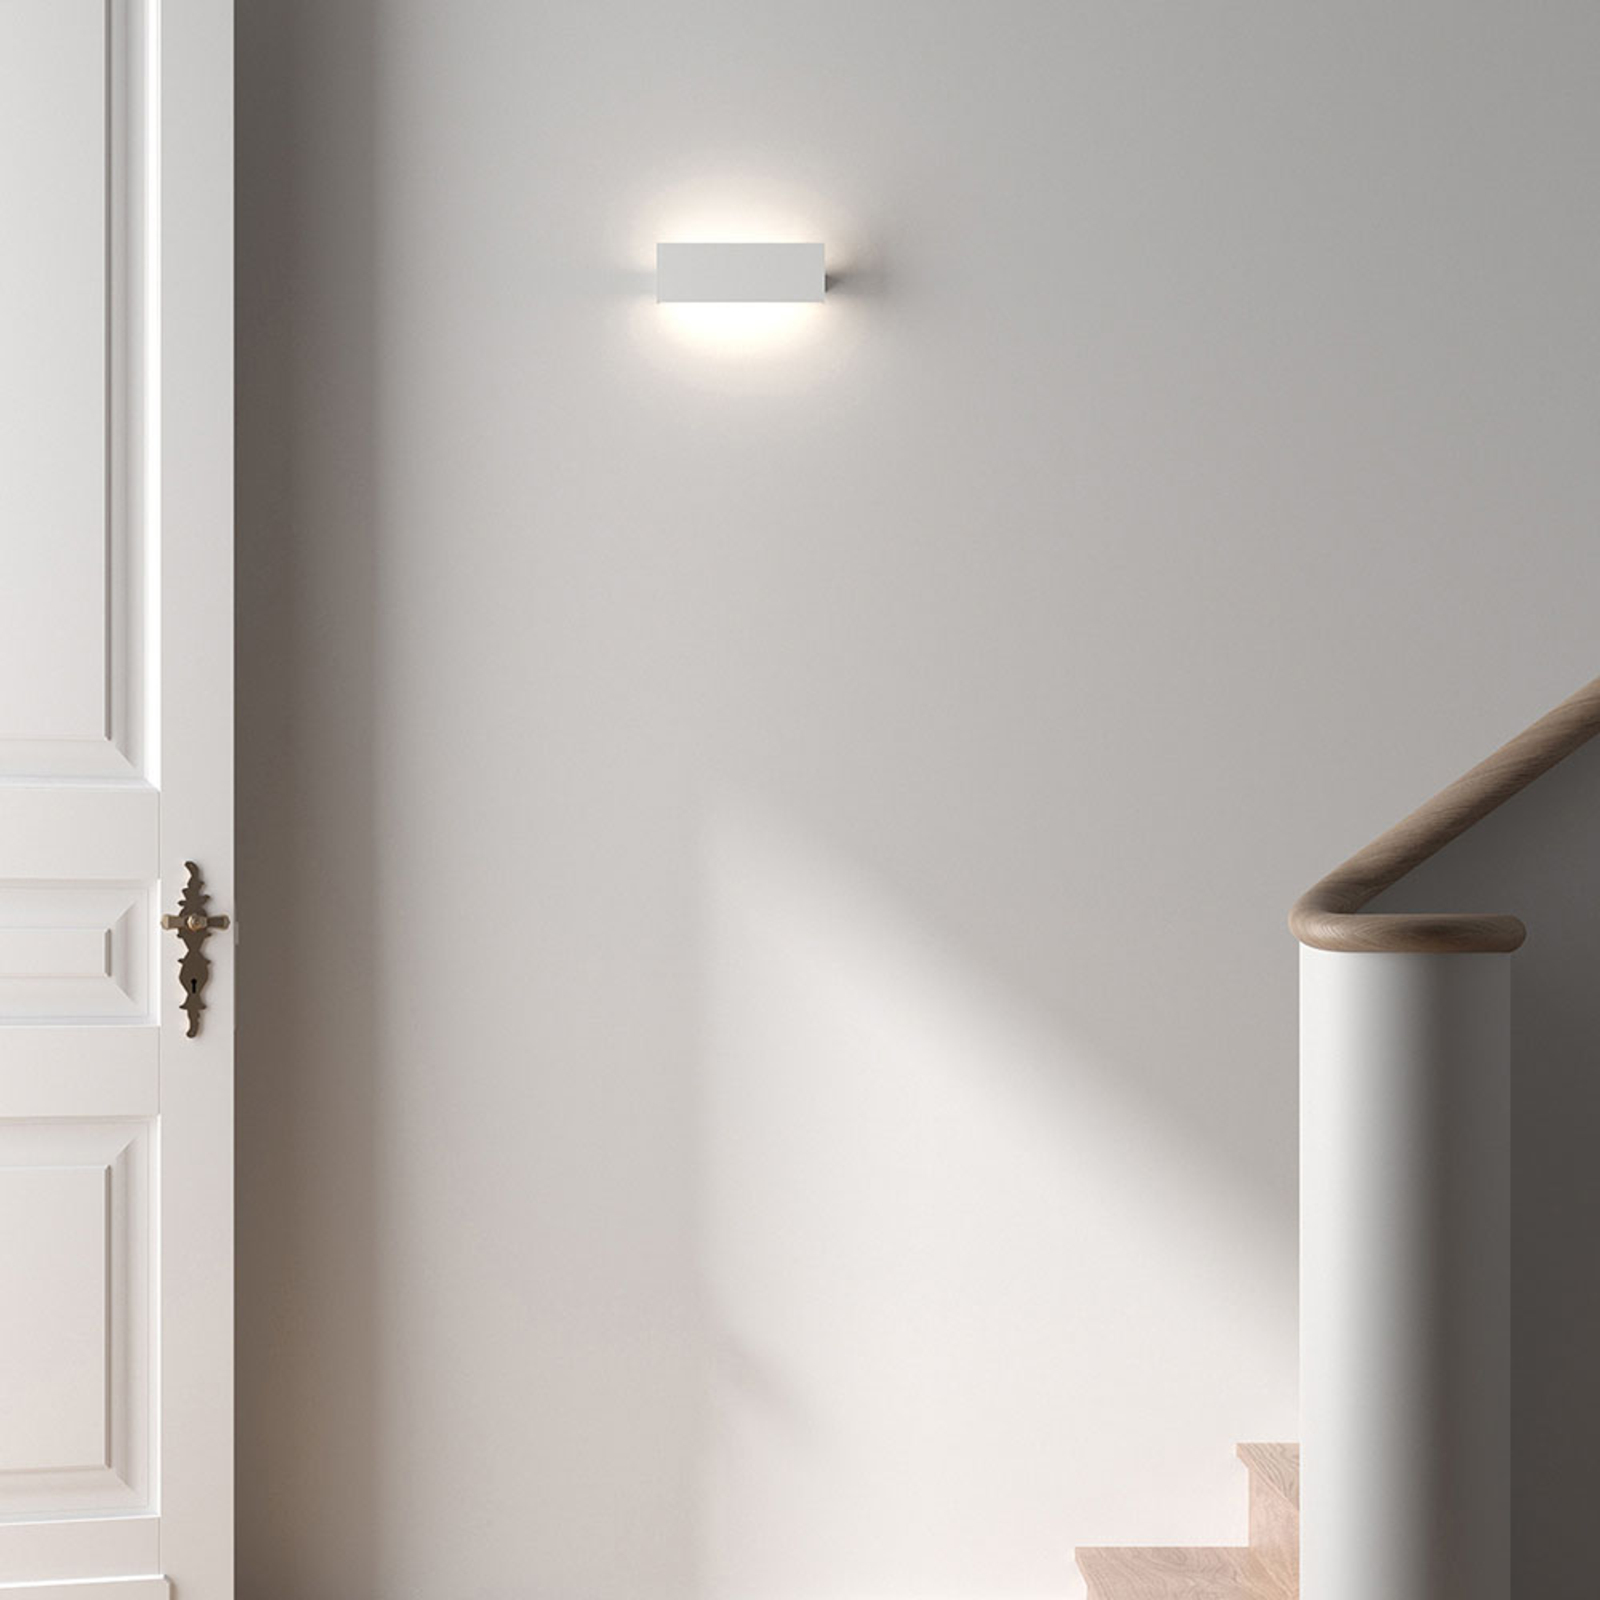 Rotaliana Ipe W2 LED nástenné svietidlo biele 3000K stmievateľné